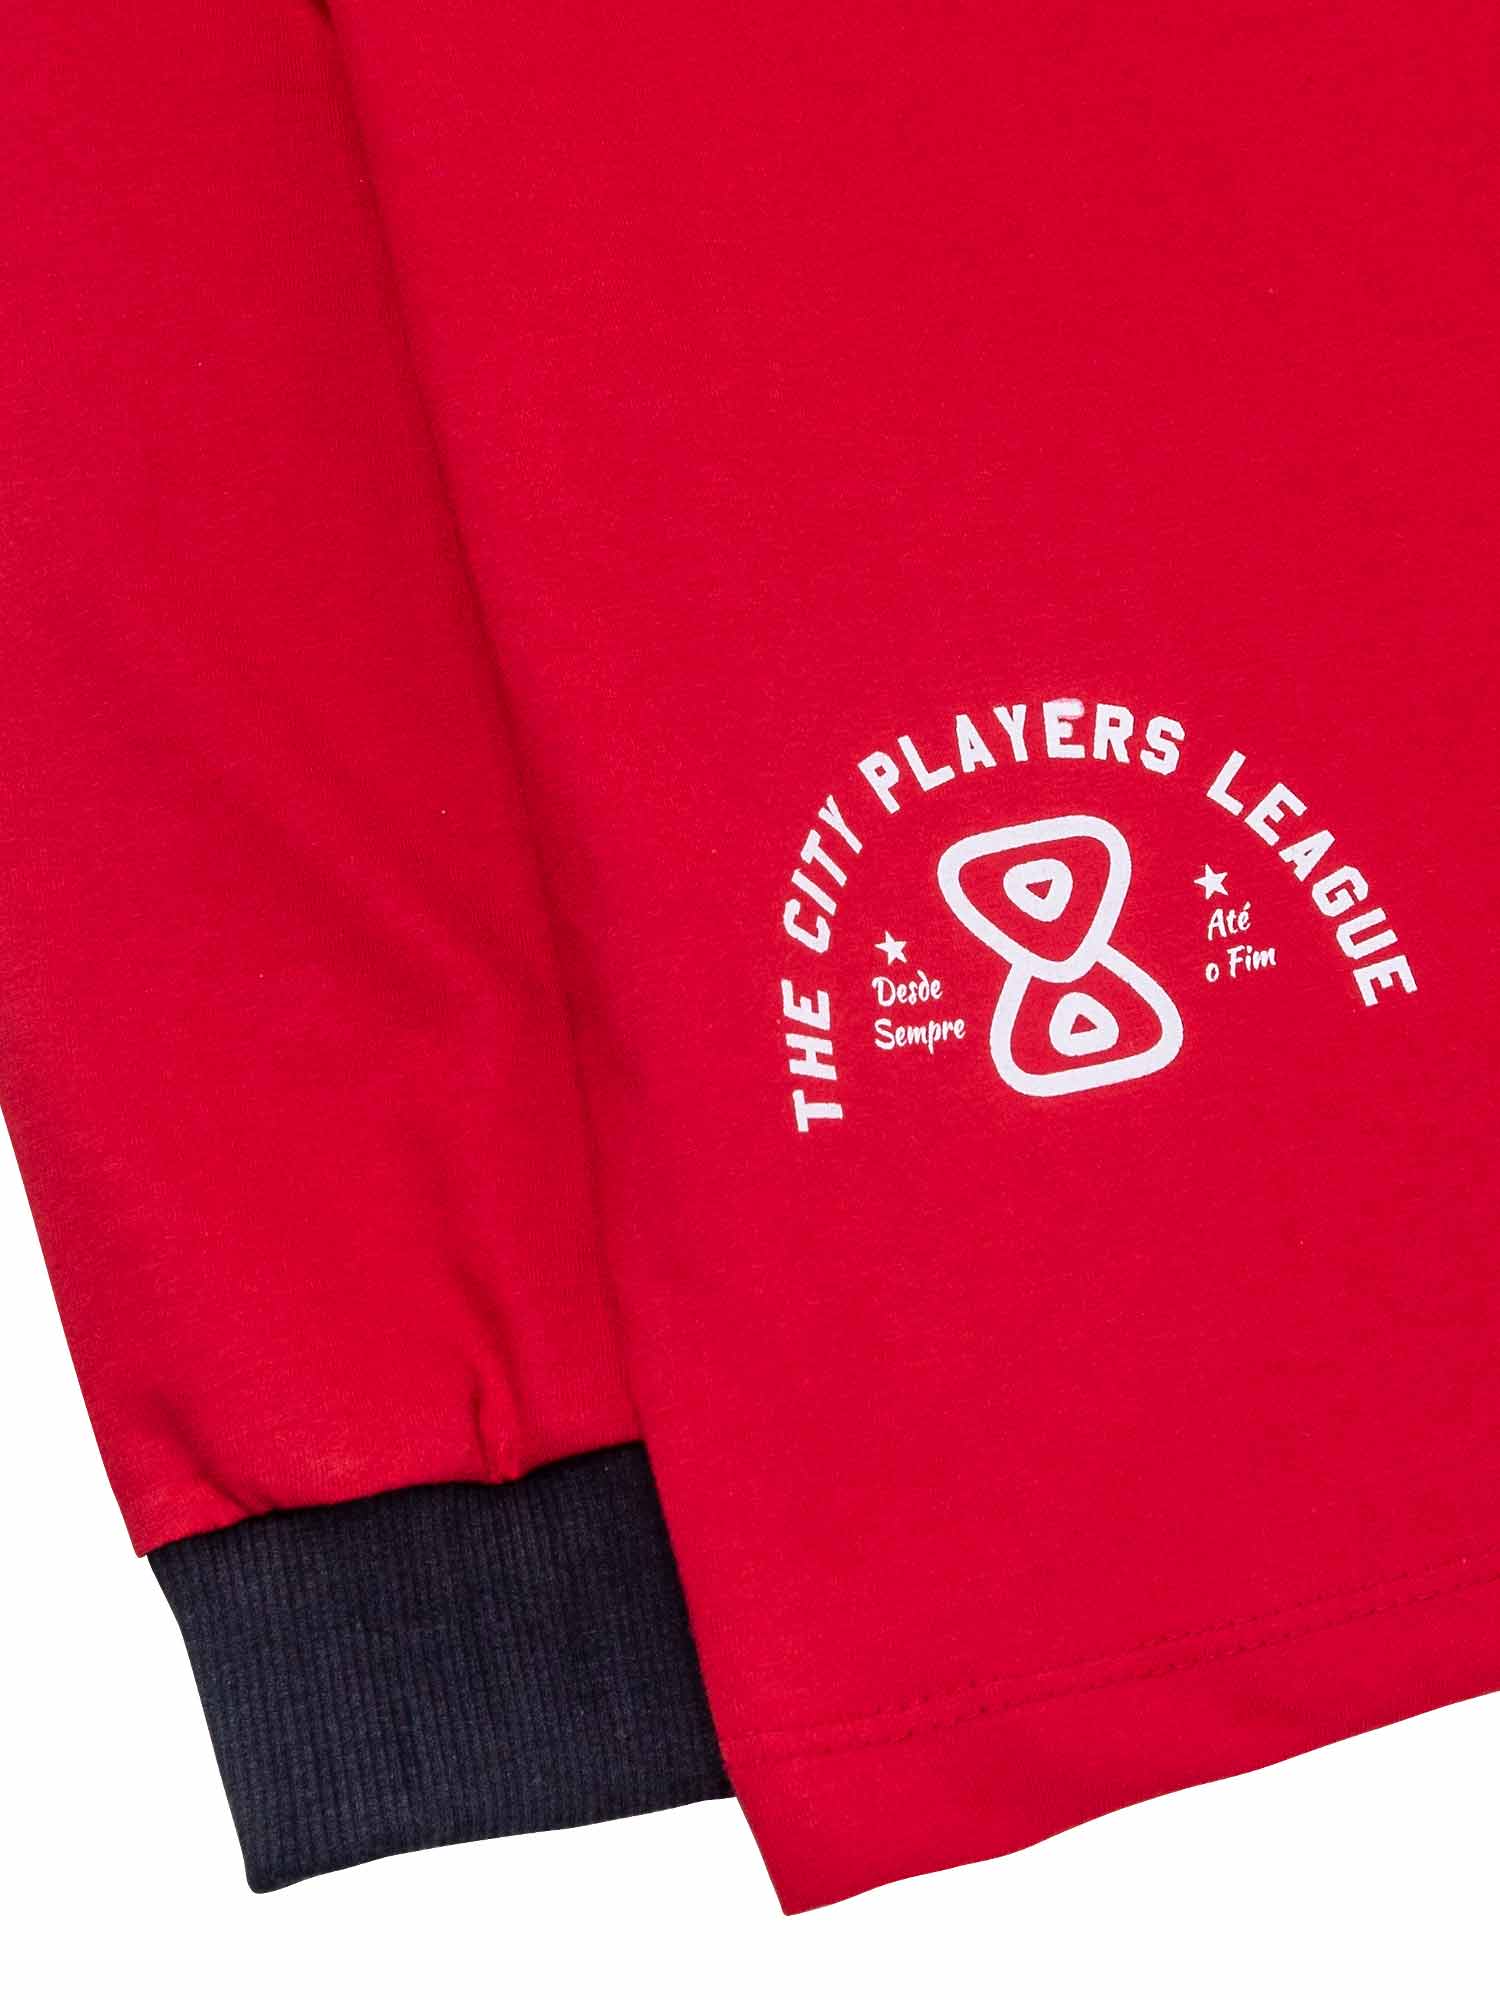     Camiseta-Future-City-Players-Vermelha-Frente-Close-Esquerda